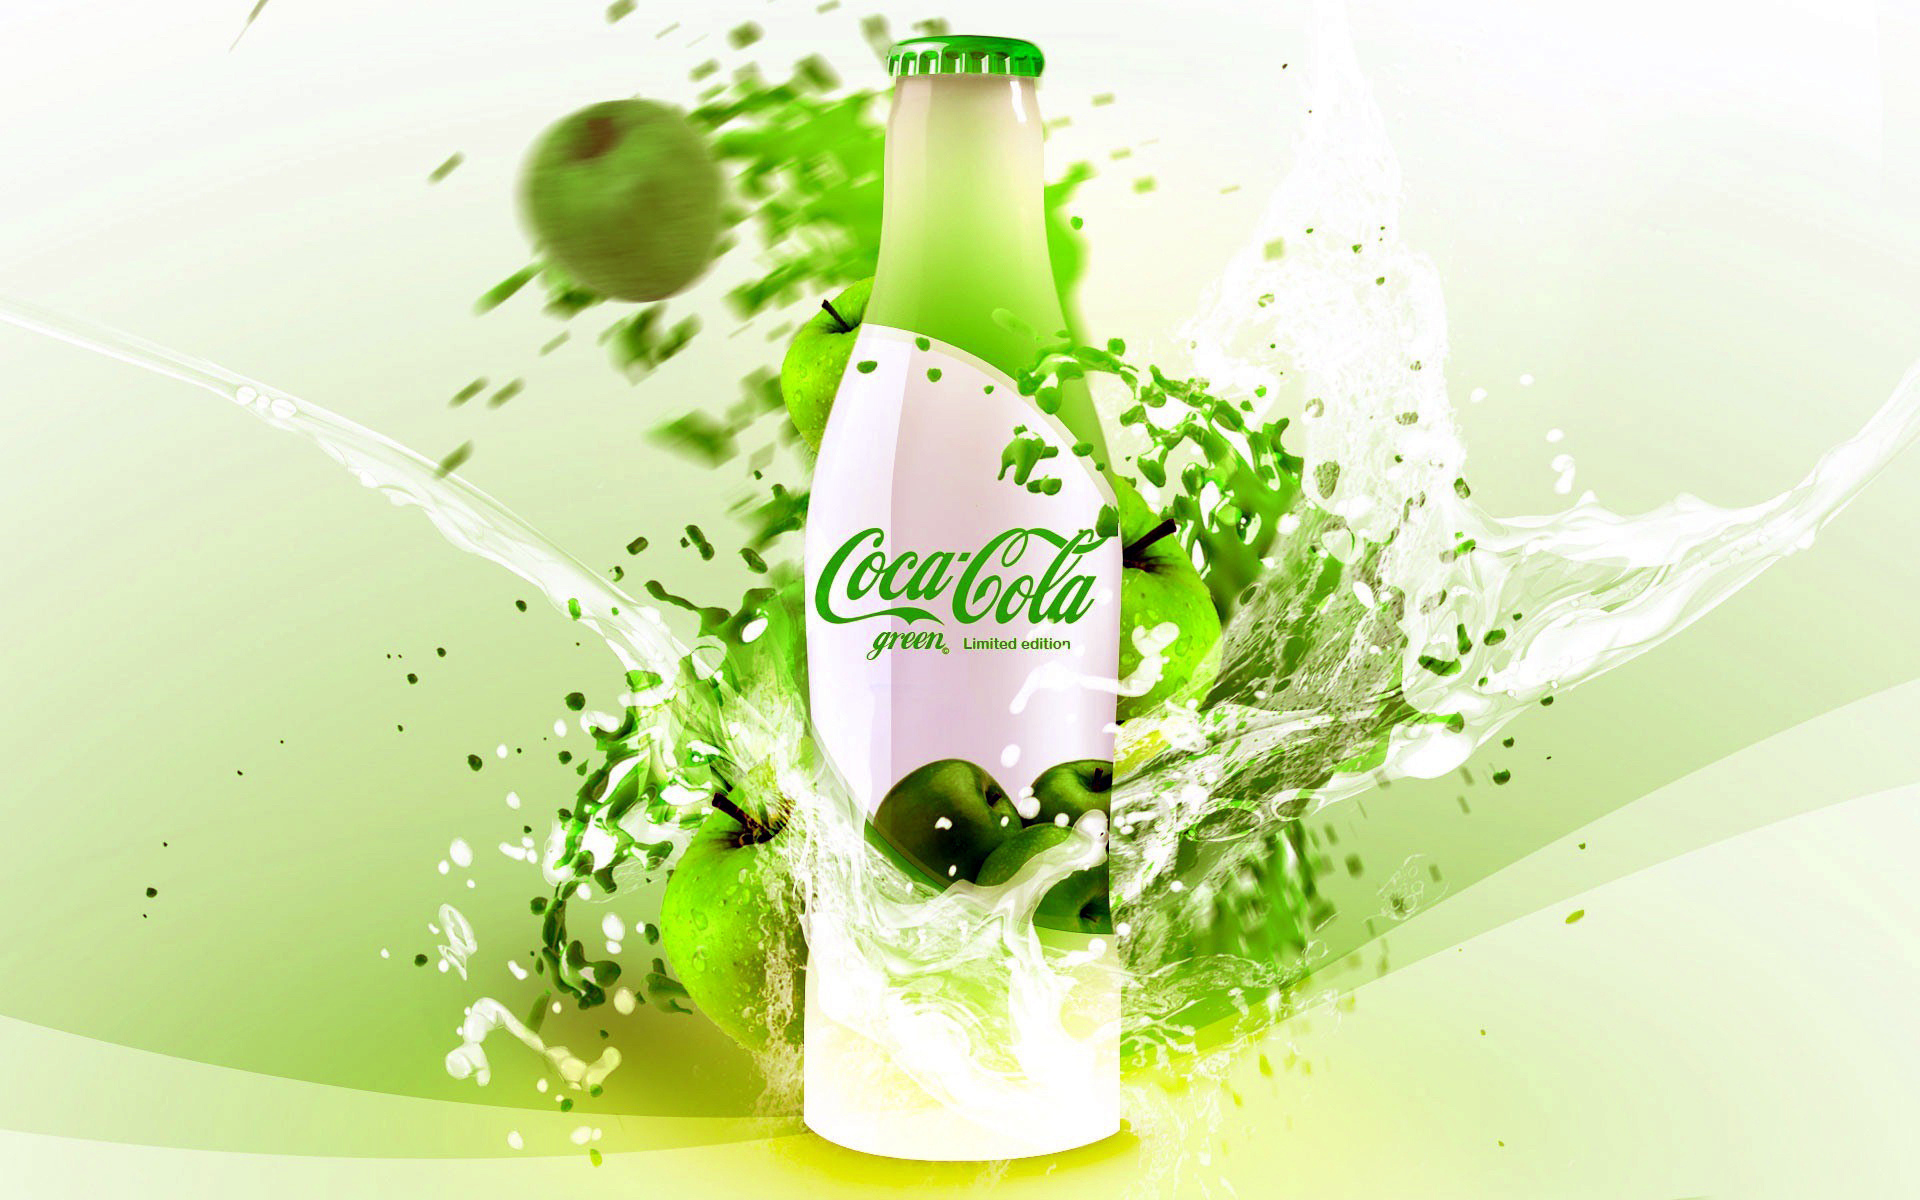 brands, coca cola, drinks, green